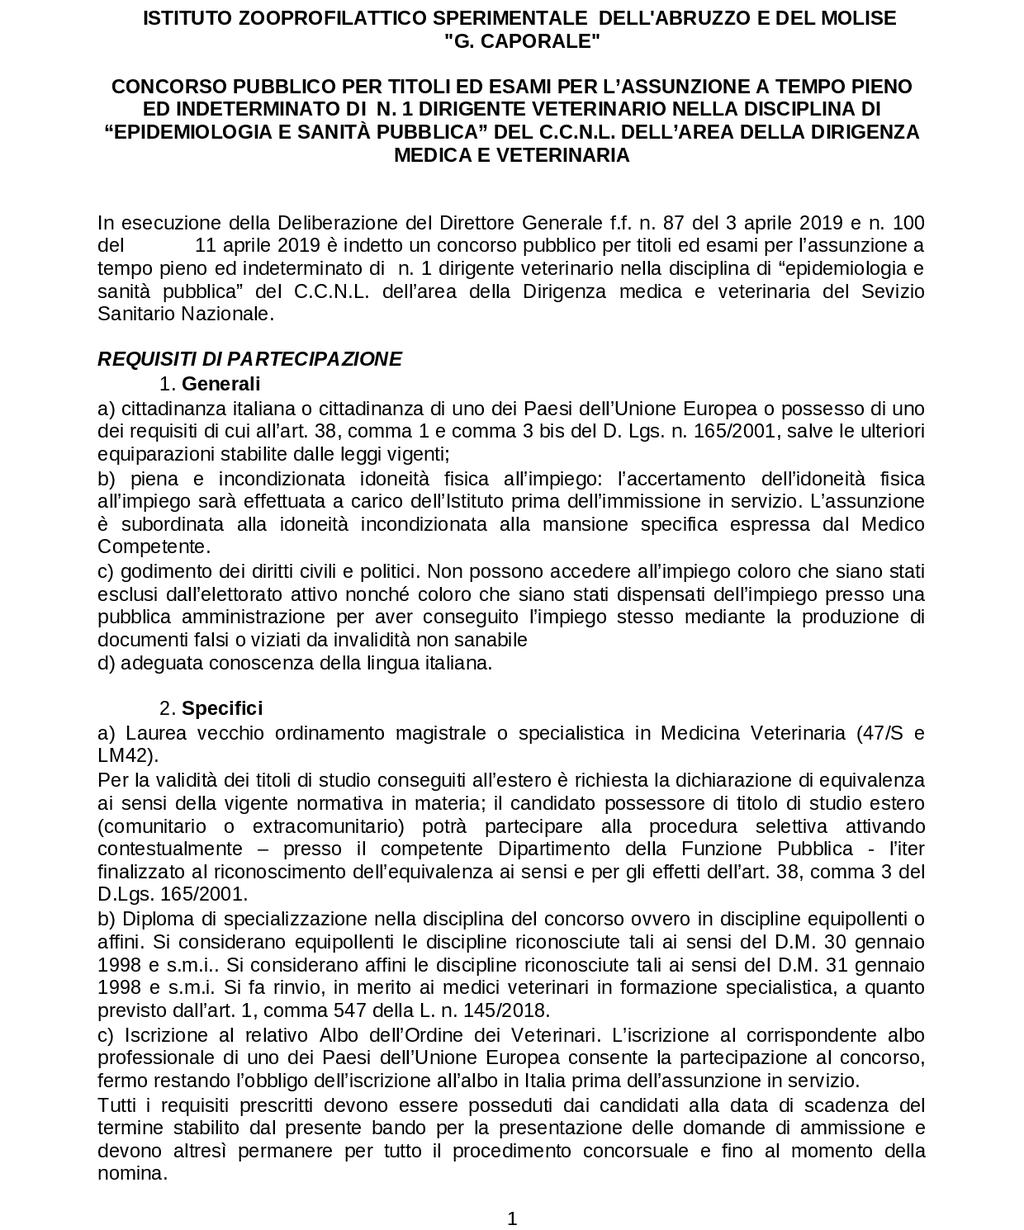 Pag. 56 Bollettino Ufficiale della Regione Abruzzo Anno XLIX - N. 76 Speciale (10.05.2019) ISTITUTO ZOOPROFILATTICO SPERIMENTALE DELL ABRUZZO E DEL MOLISE G.